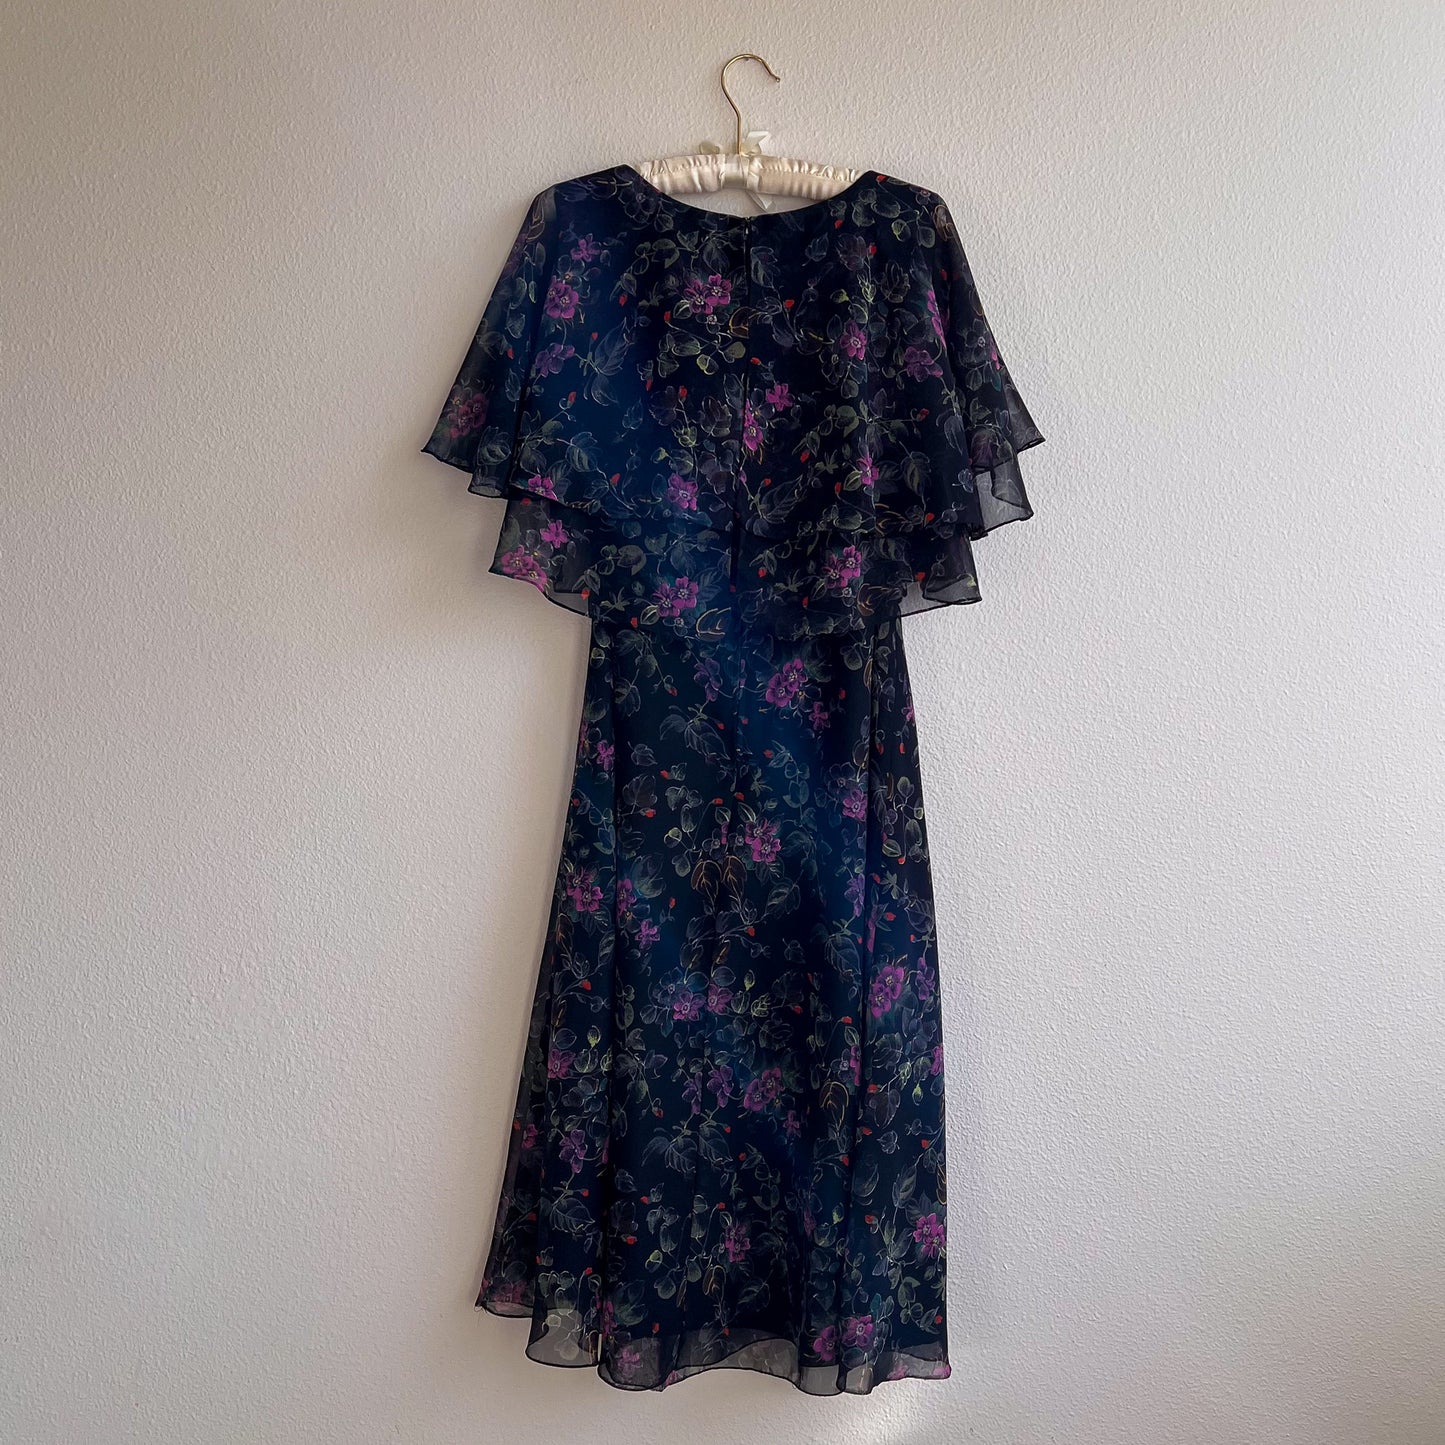 1970s Black Chiffon Dress With Purple Flowers (M/L)